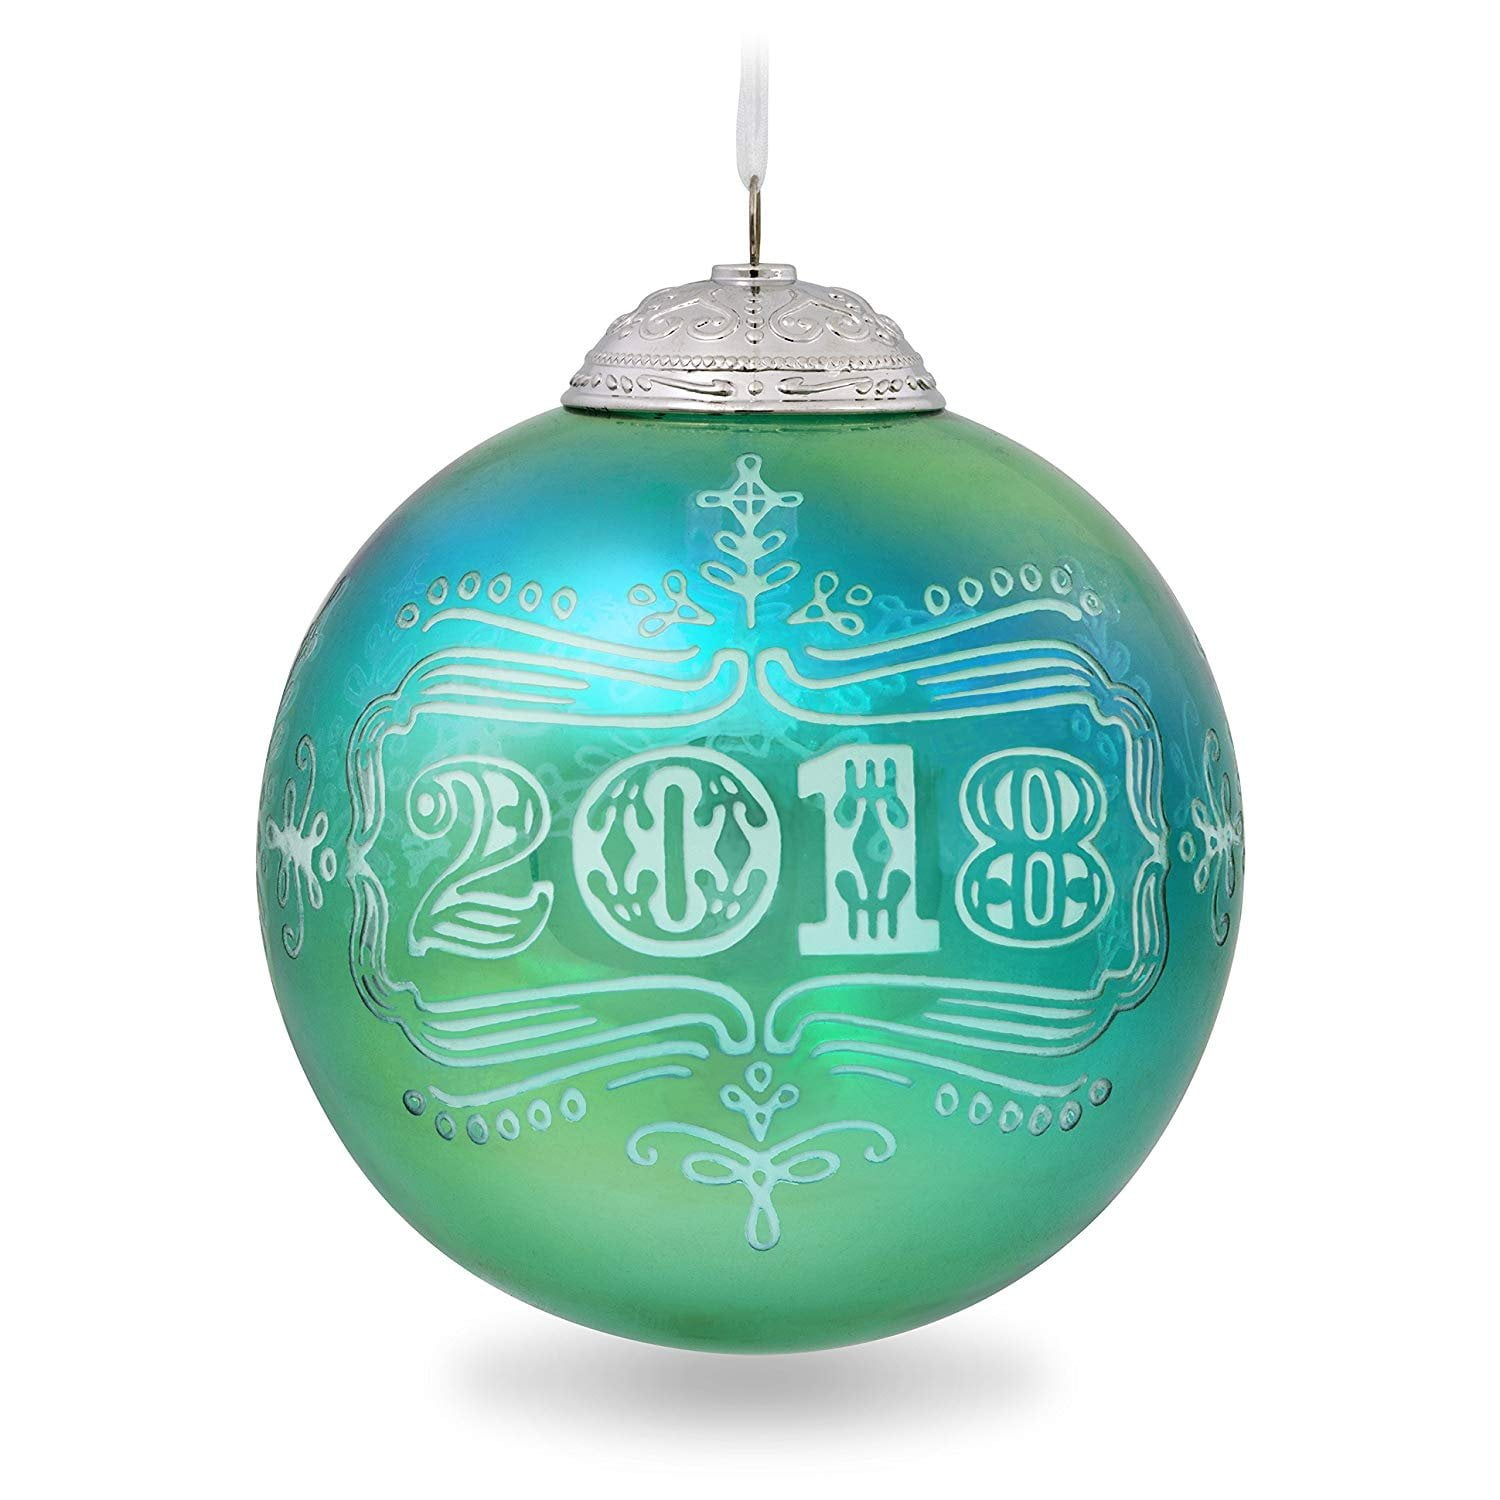 Hallmark 2018 Ornament  Christmas Commemorative  6th in the Series